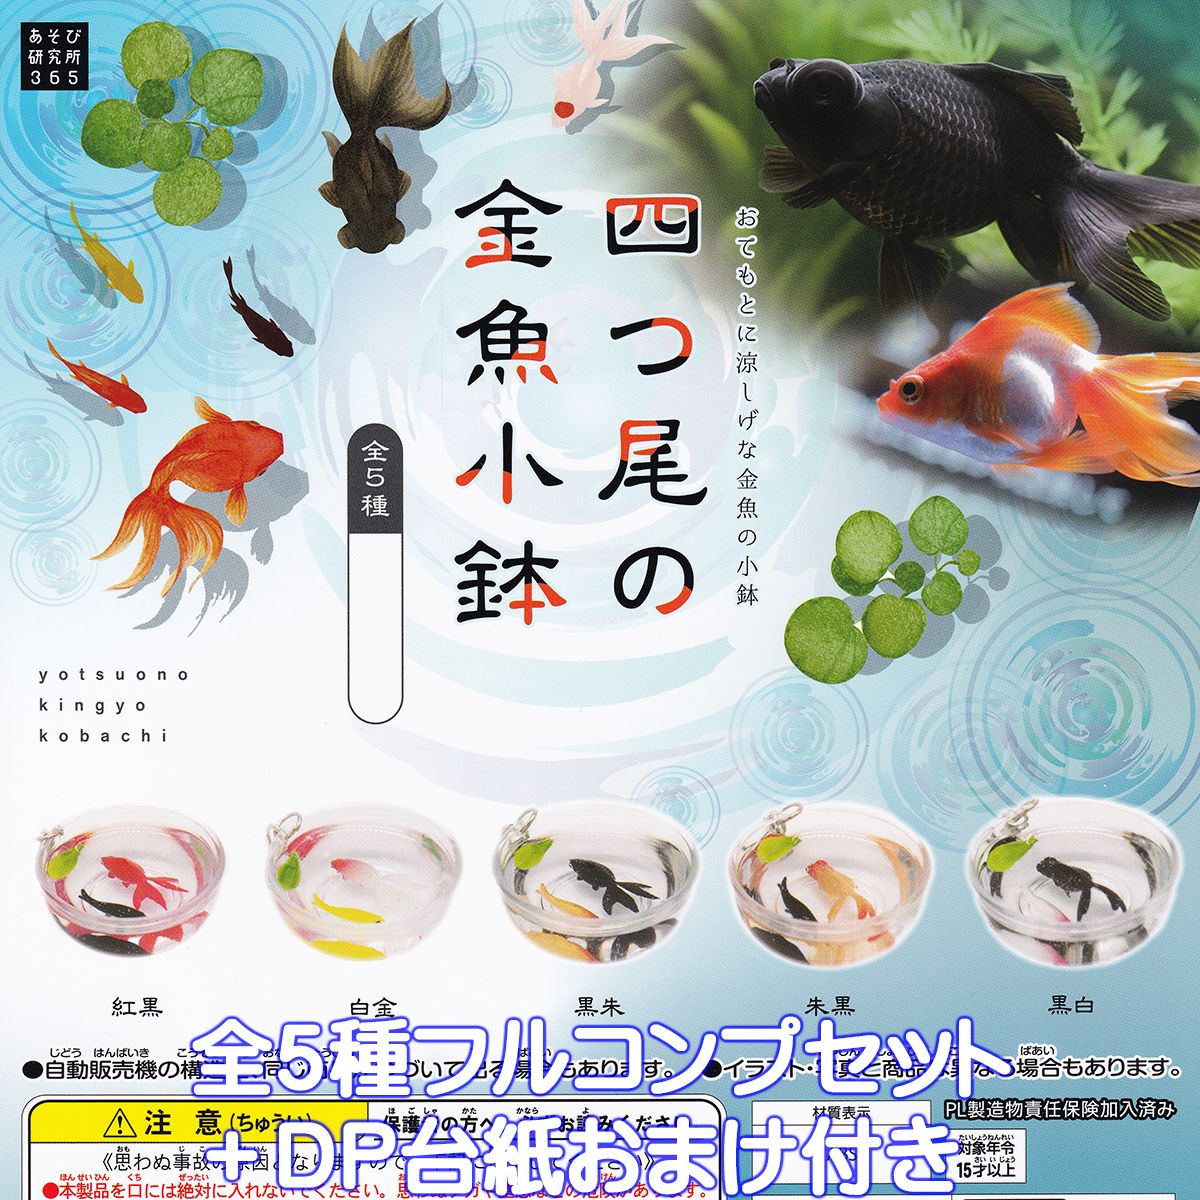 猫と金魚 ガチャ 全４種セット 金魚鉢 ねこ フィギュア ミニチュア